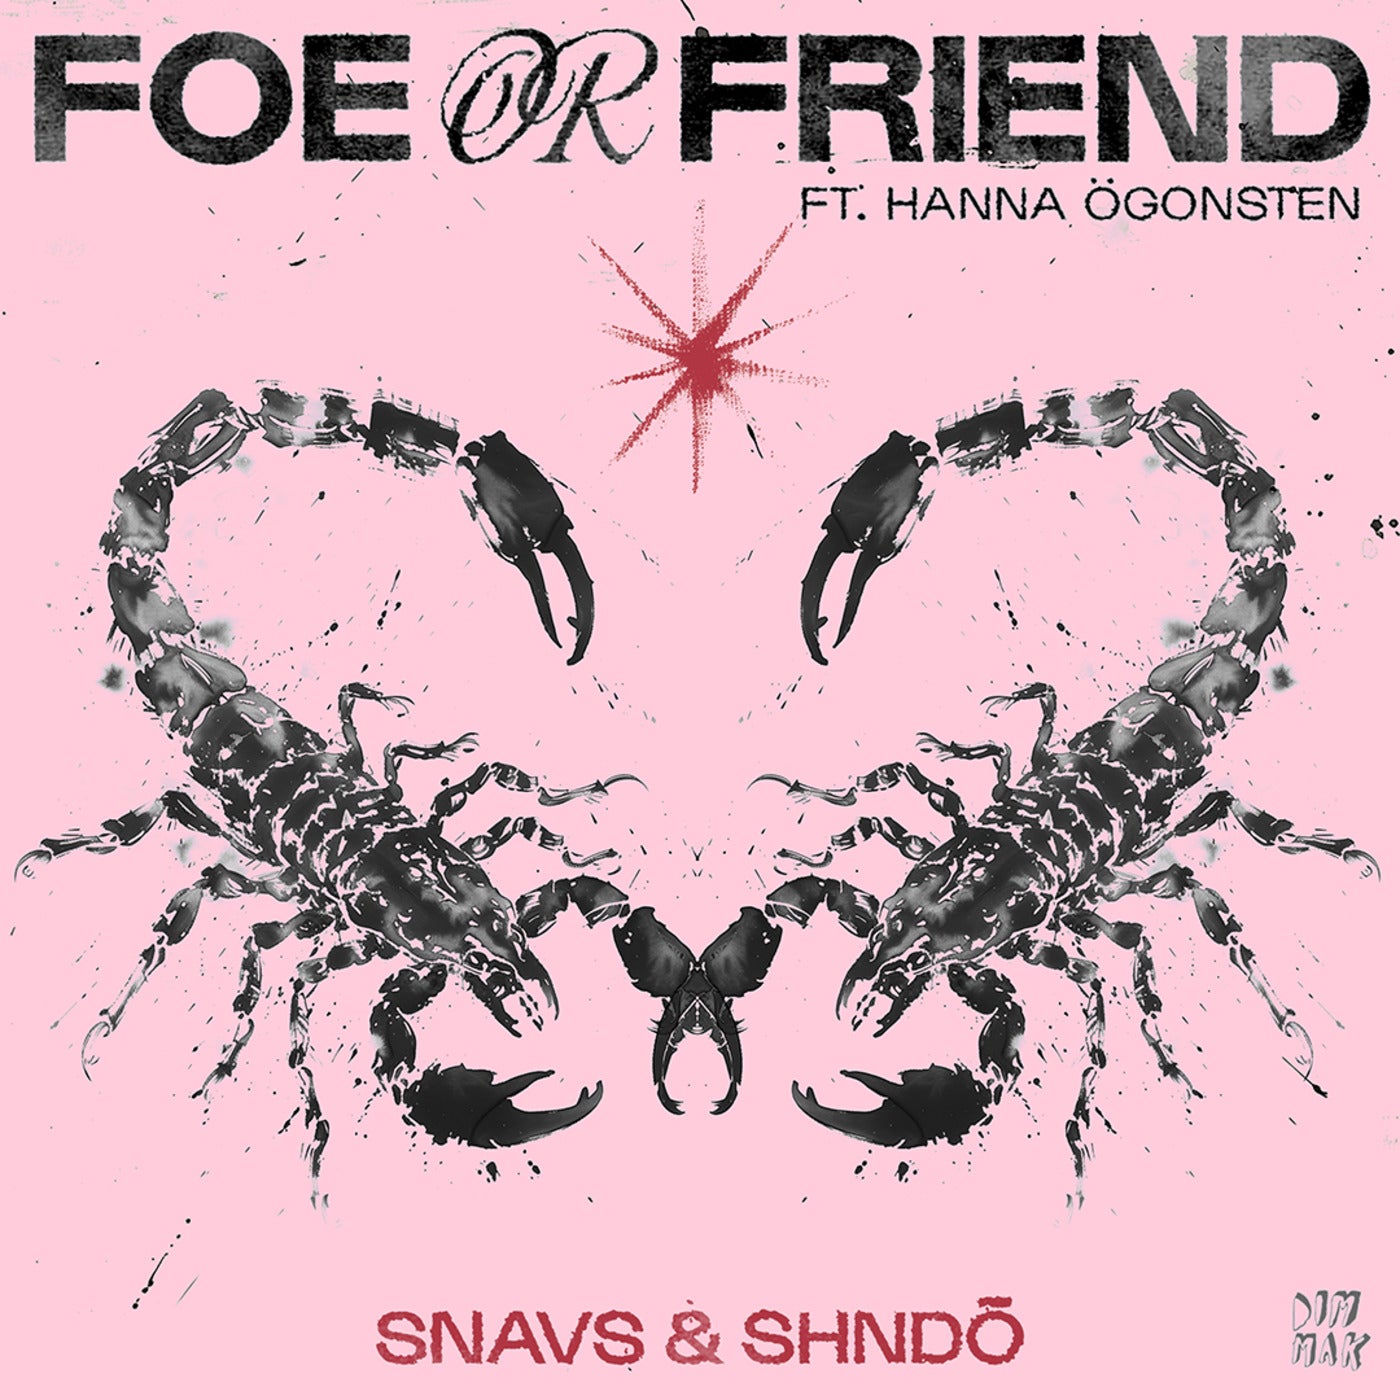 Foe Or Friend (feat. hanna ögonsten)